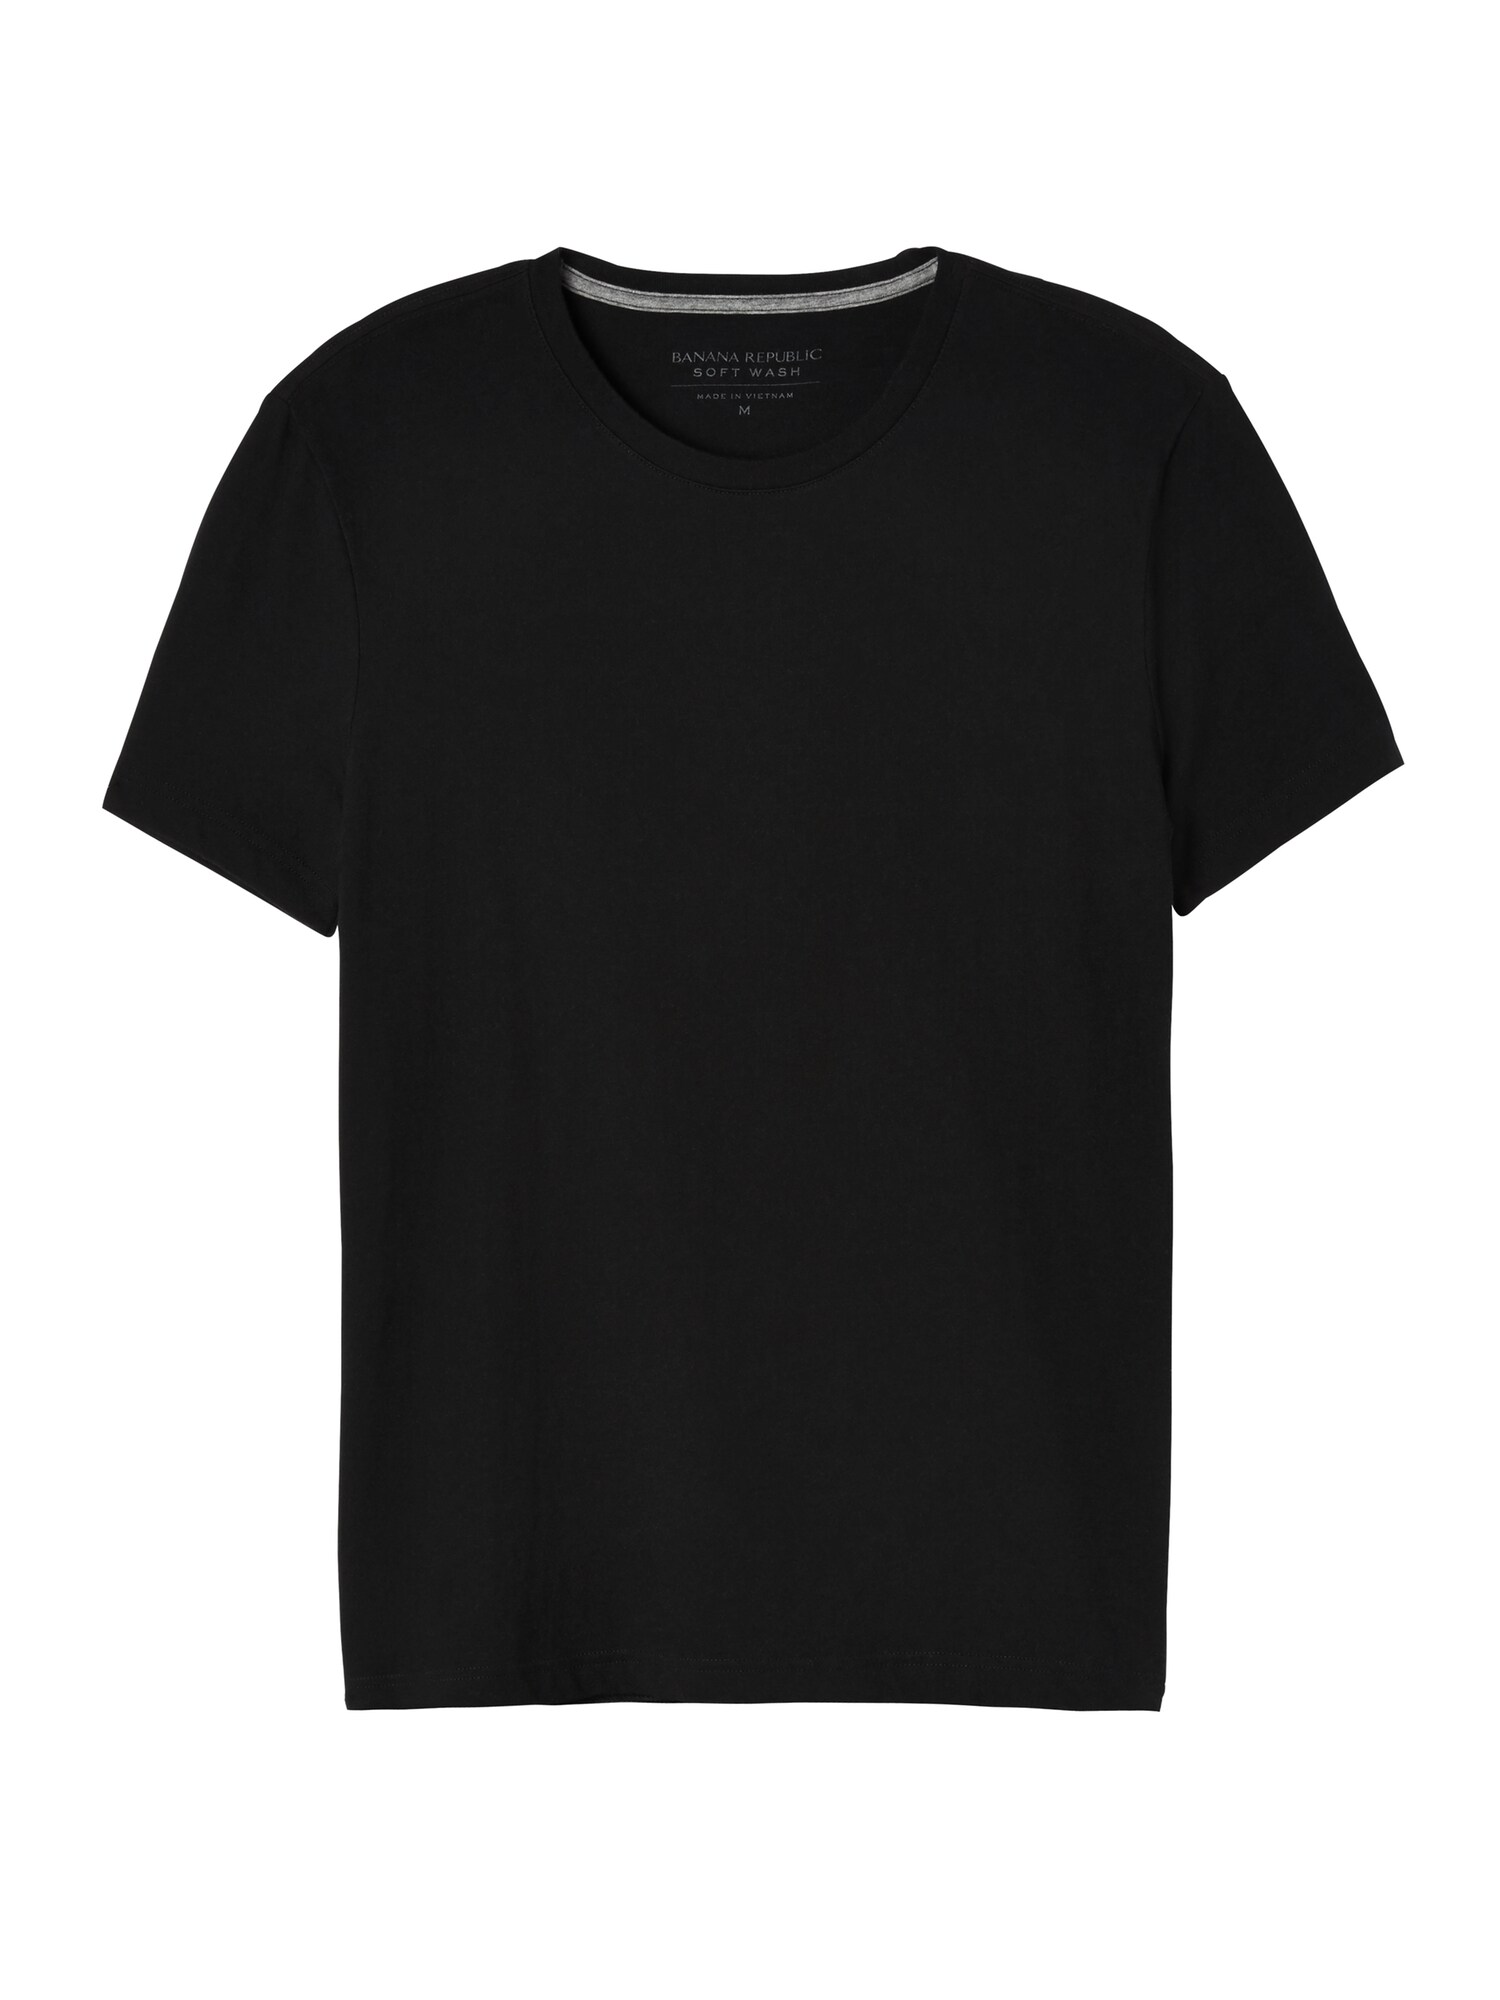 Premium Performance Undershirt Crew-Neck T-Shirt